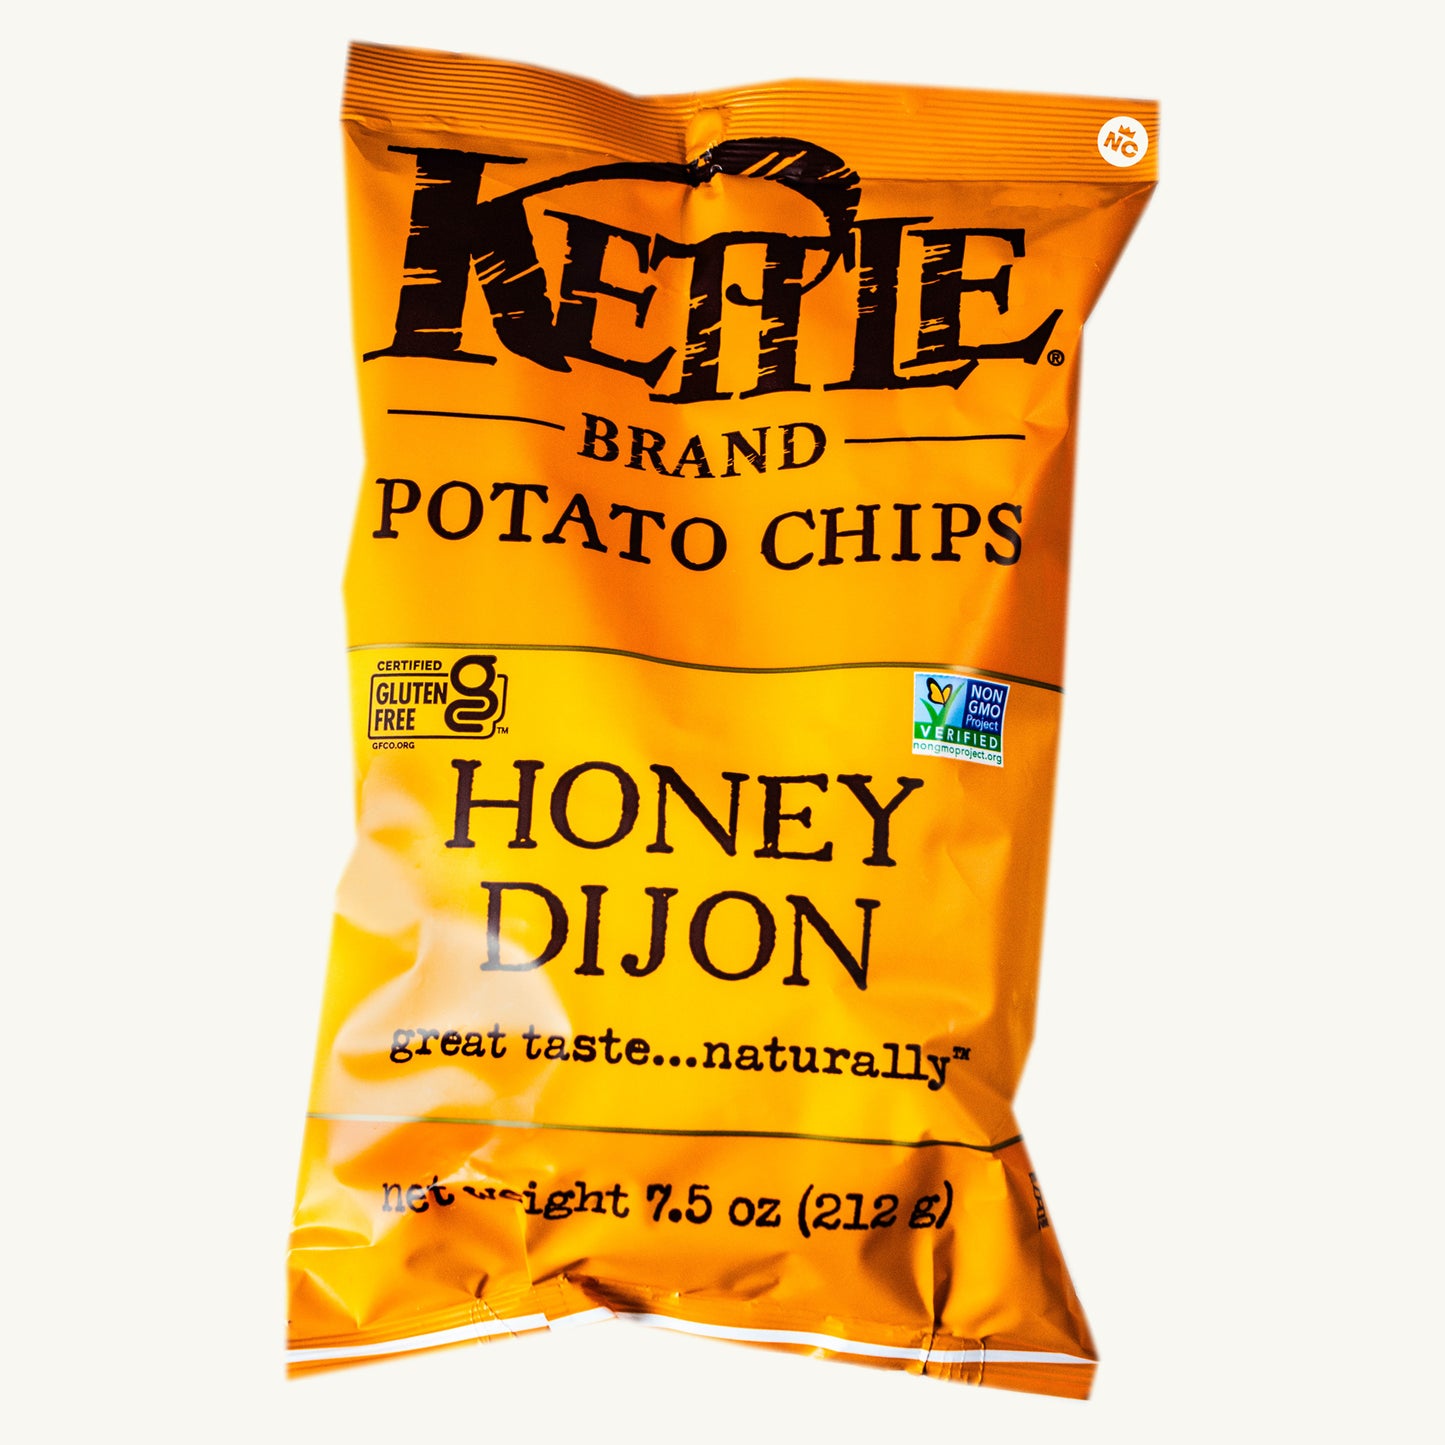 Kettle Honey Dijon Potato Chips 7.5oz